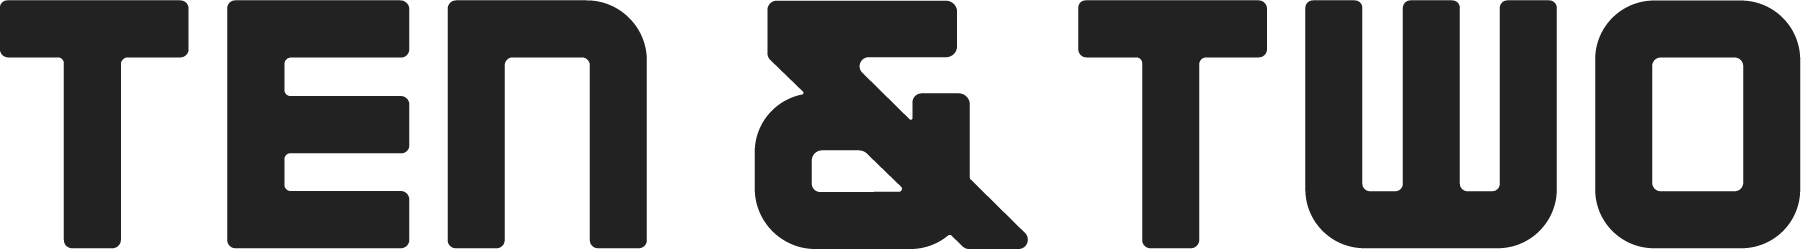 10N2_Primary-Logo_Black.png